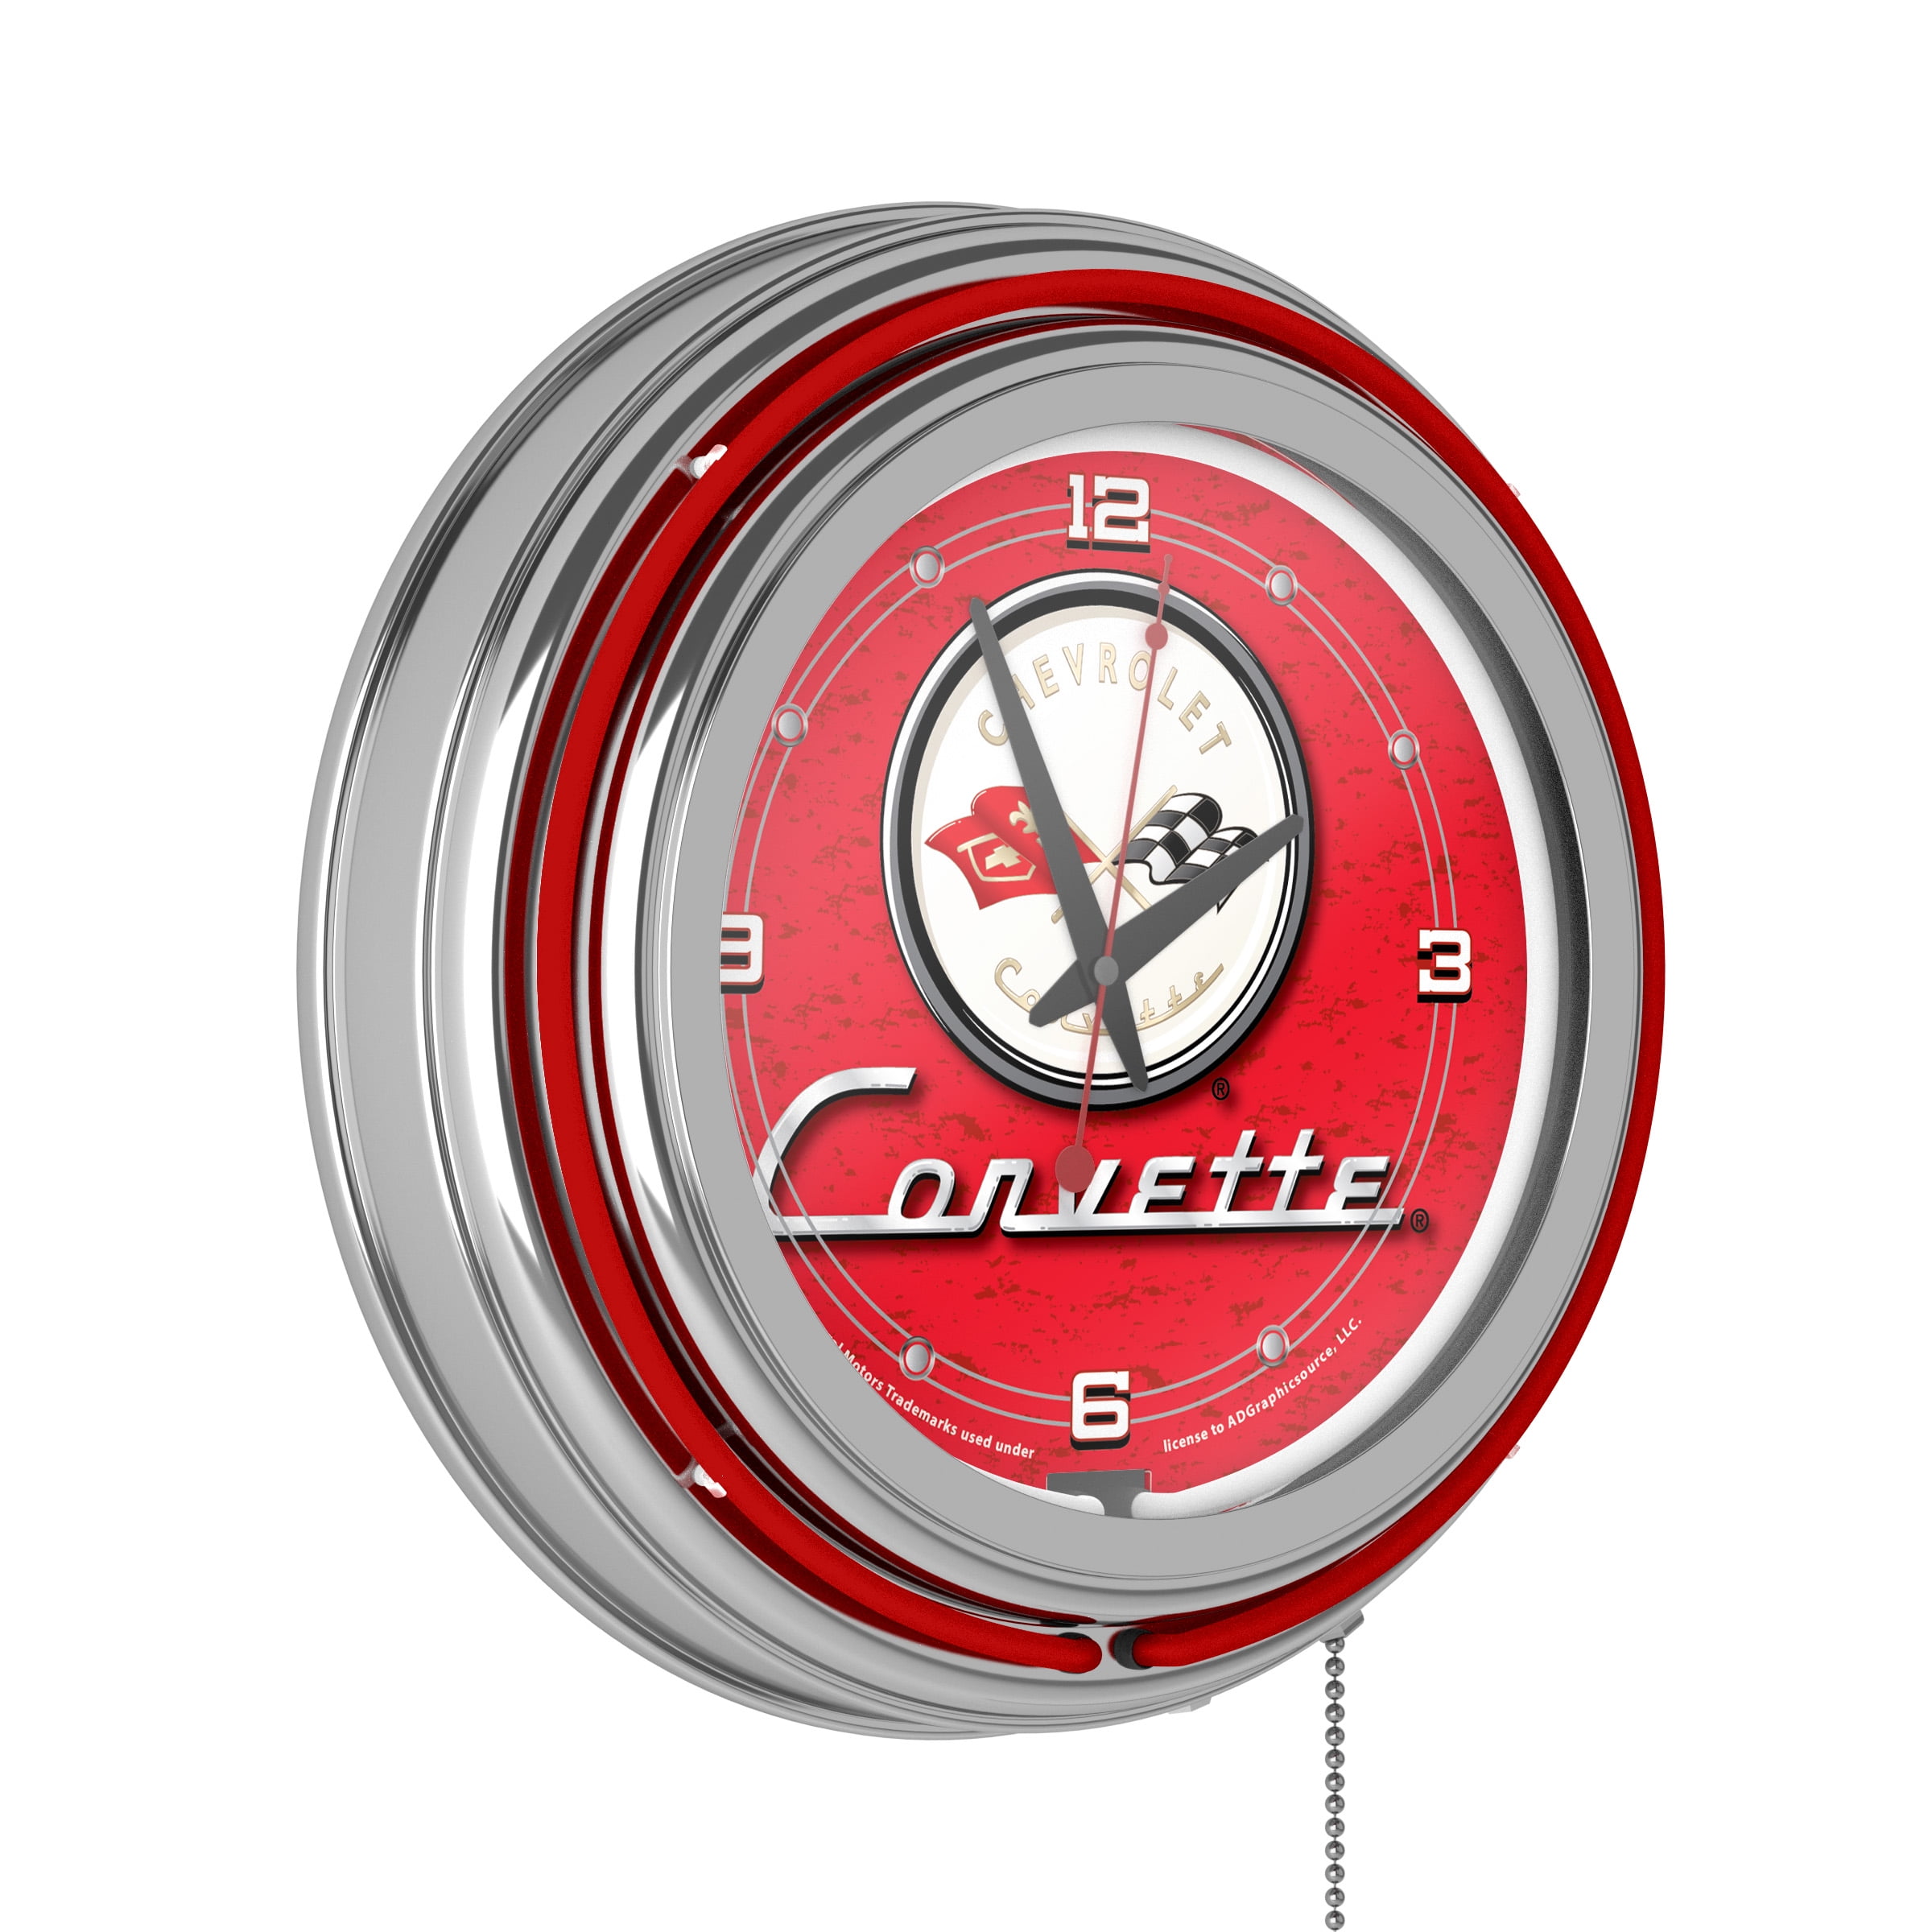 Corvette C1 Neon Clock - 14 inch Diameter - Red - Walmart.com - Walmart.com